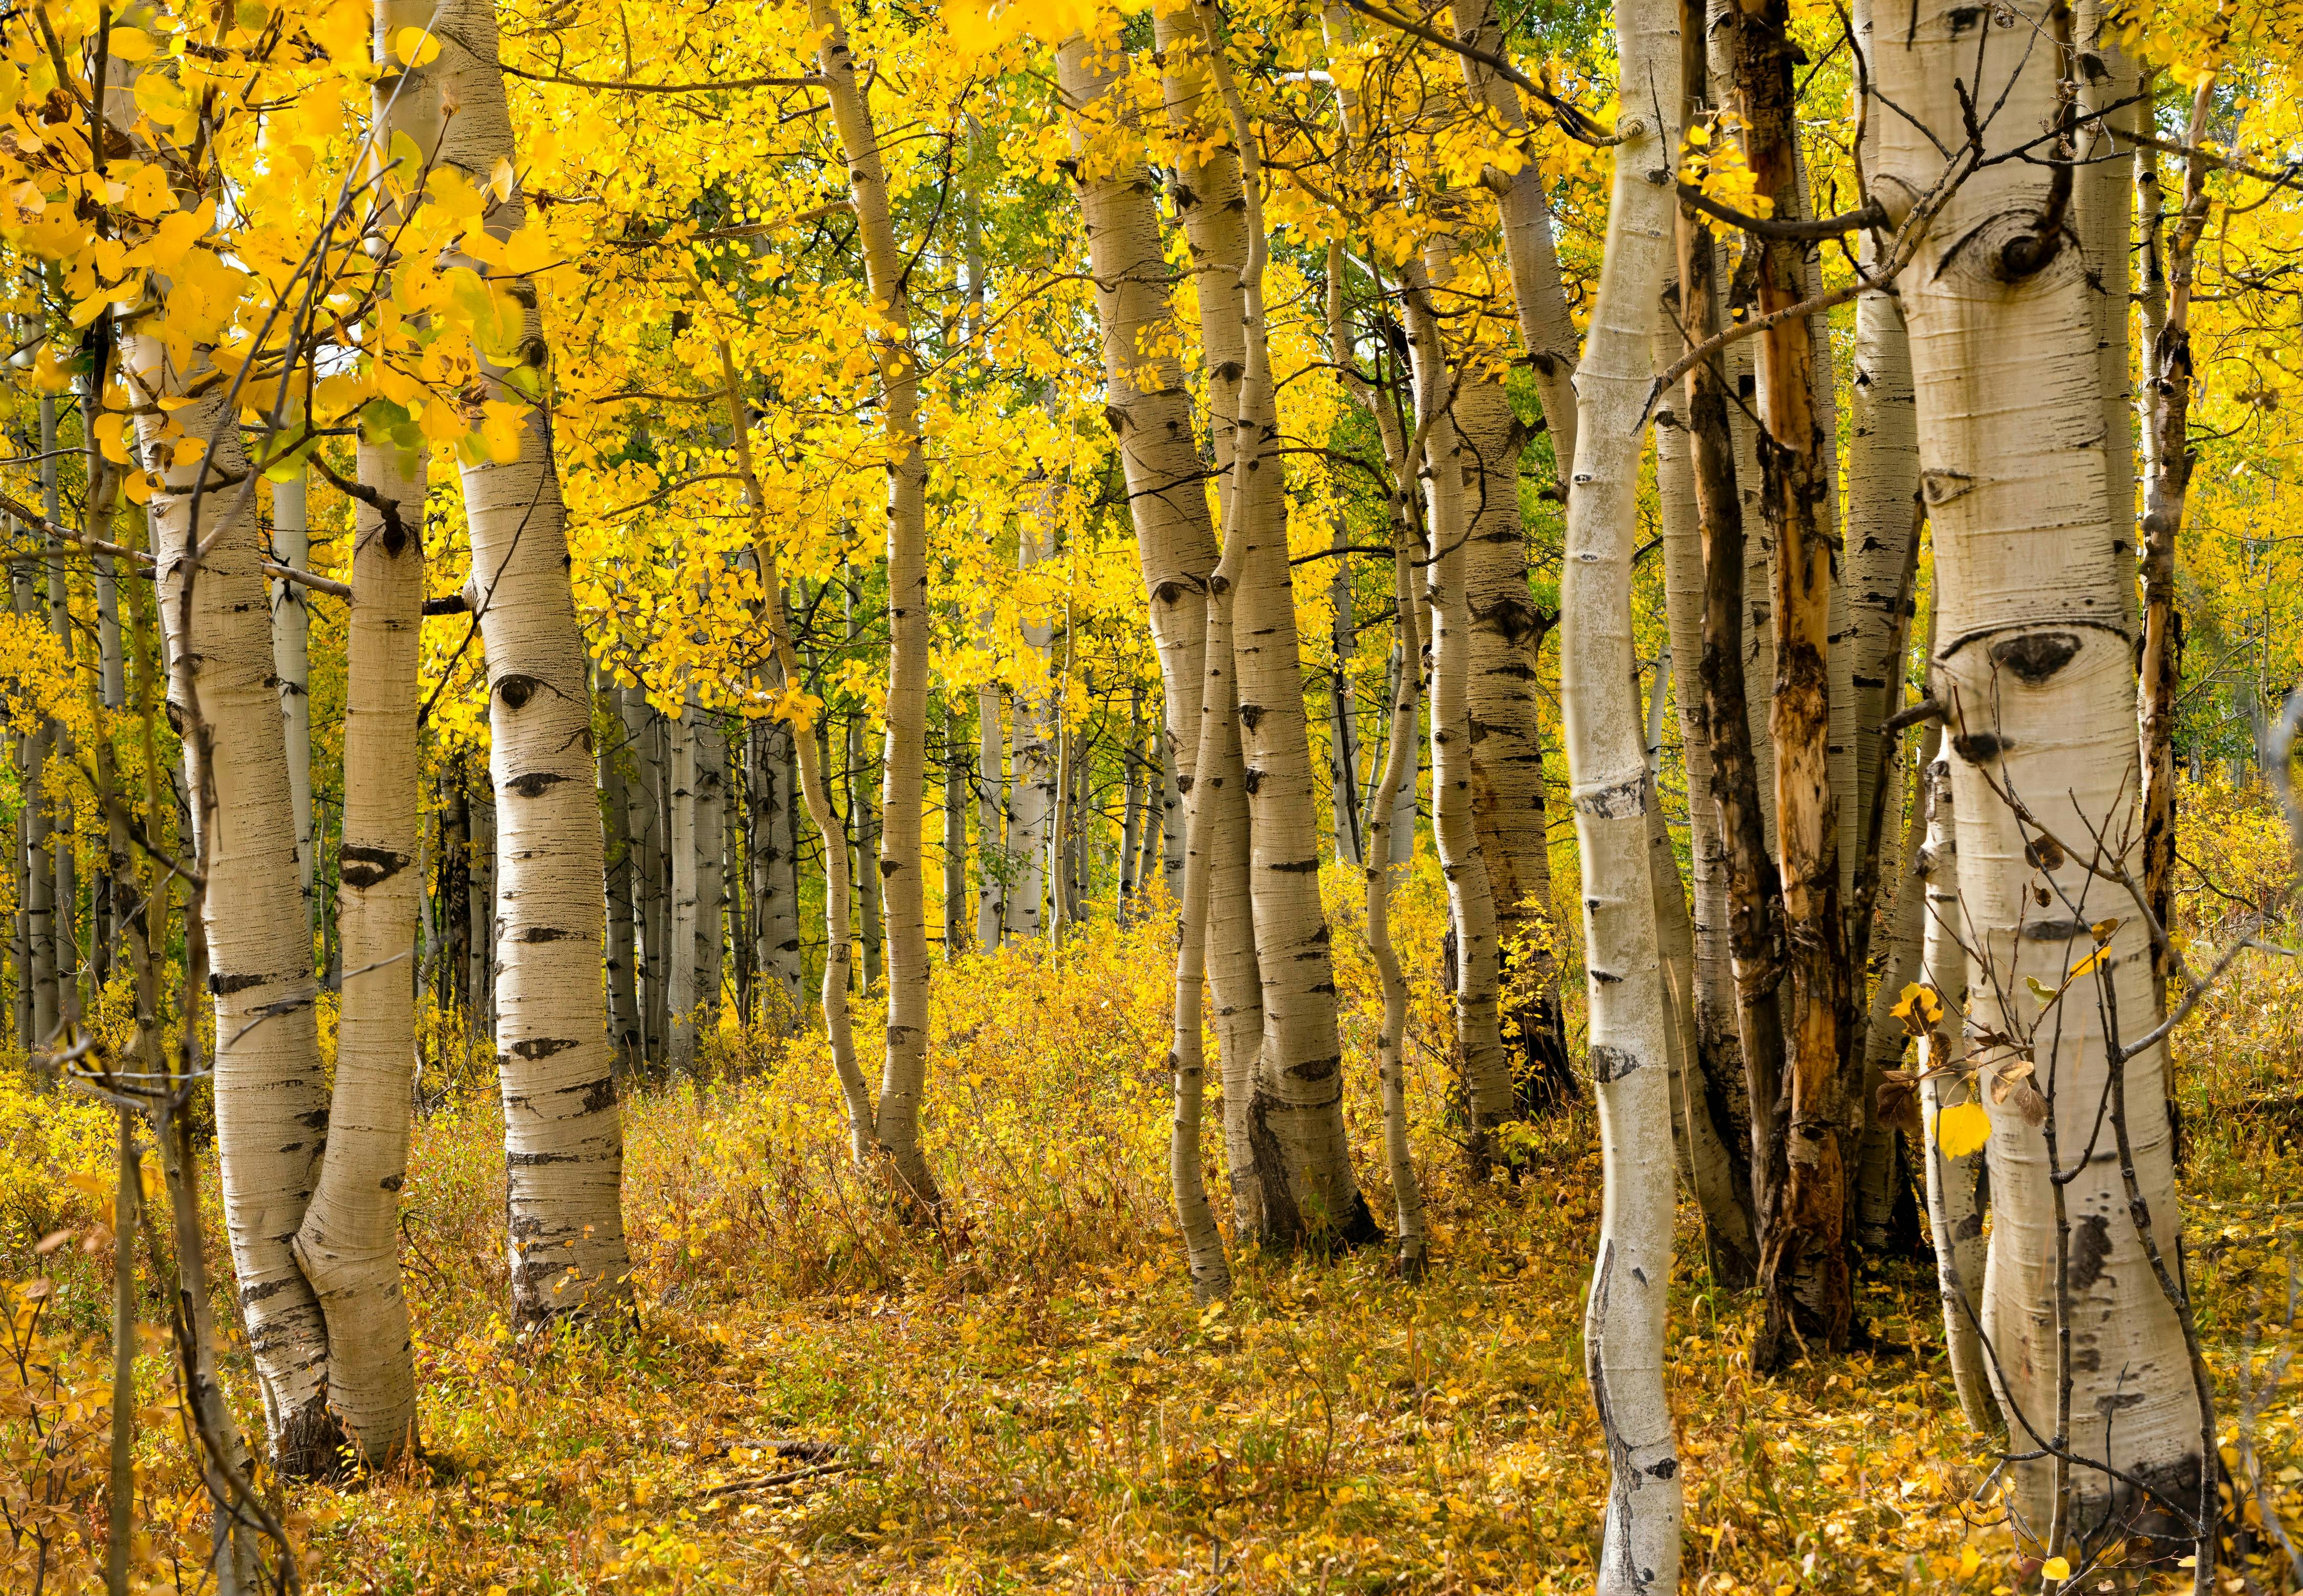 A grove of aspens in fall.